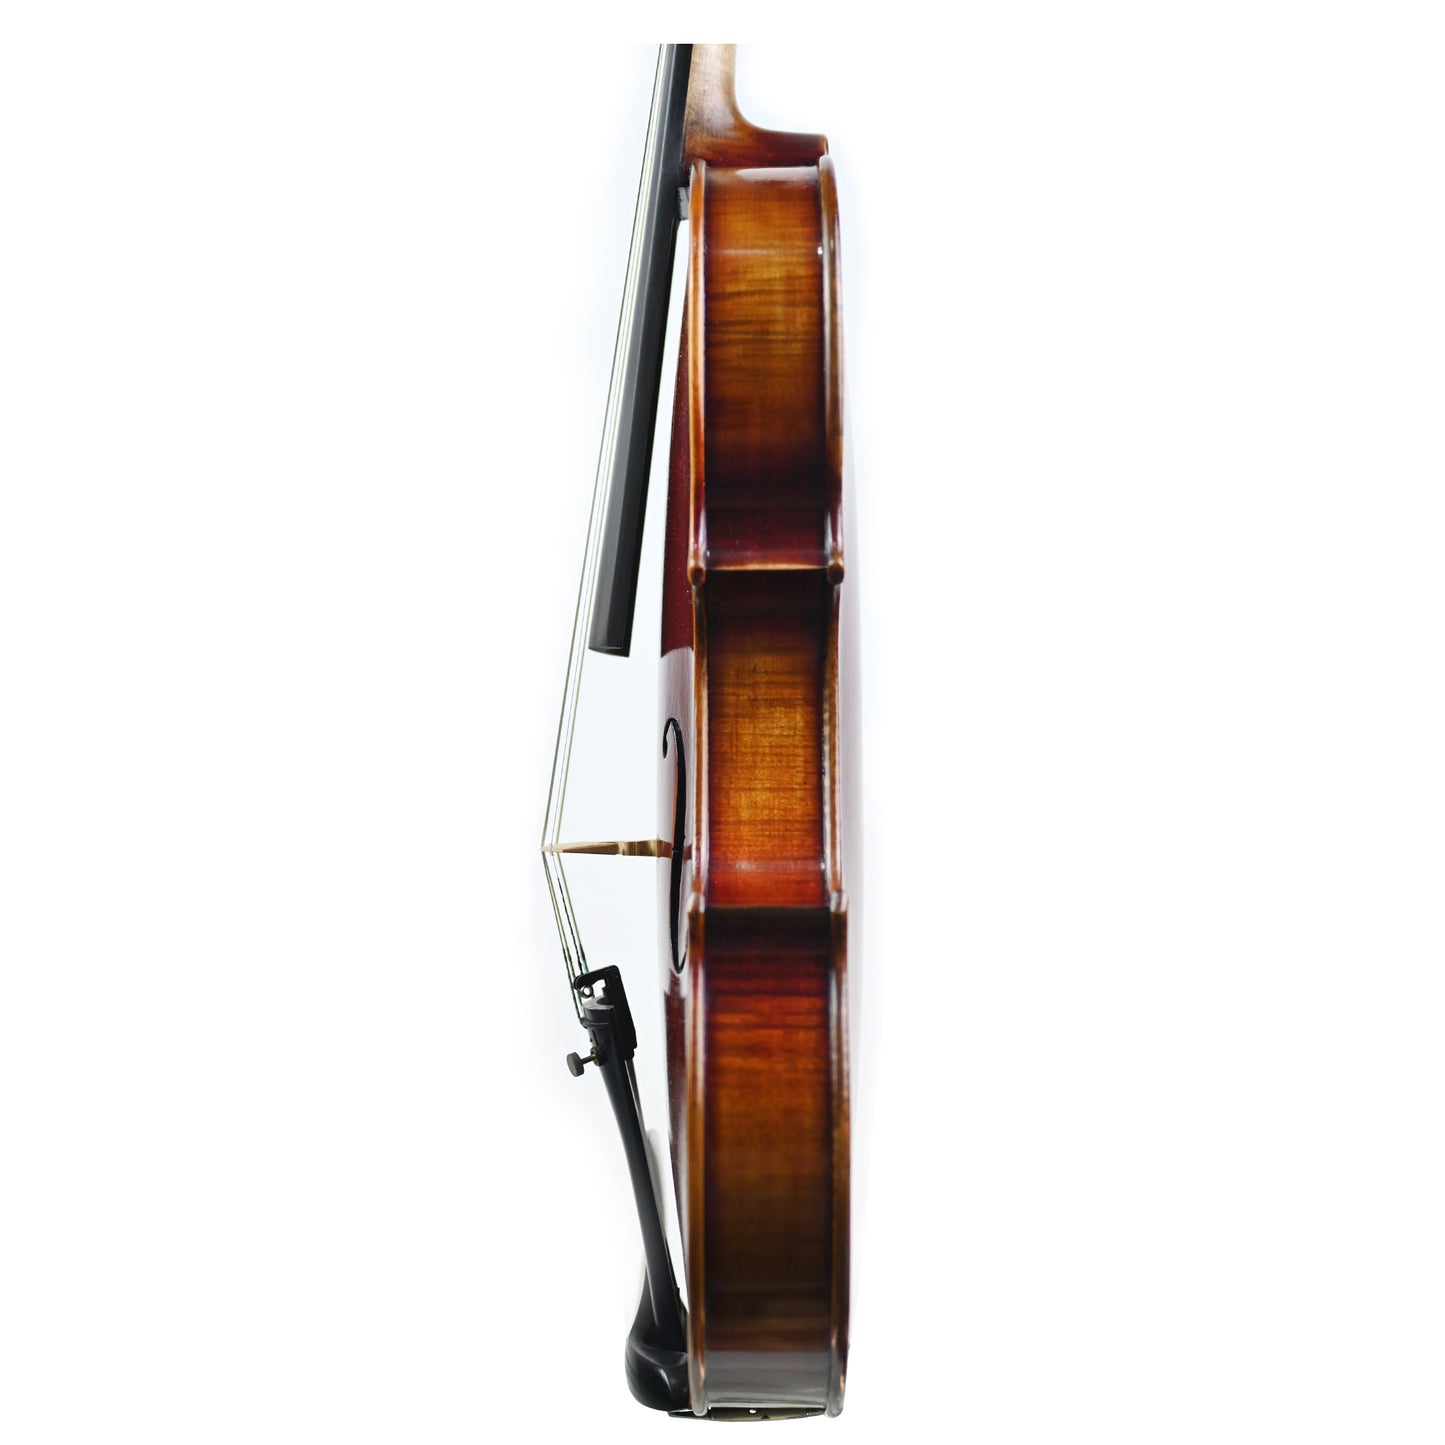 7017 beginner violin left rib